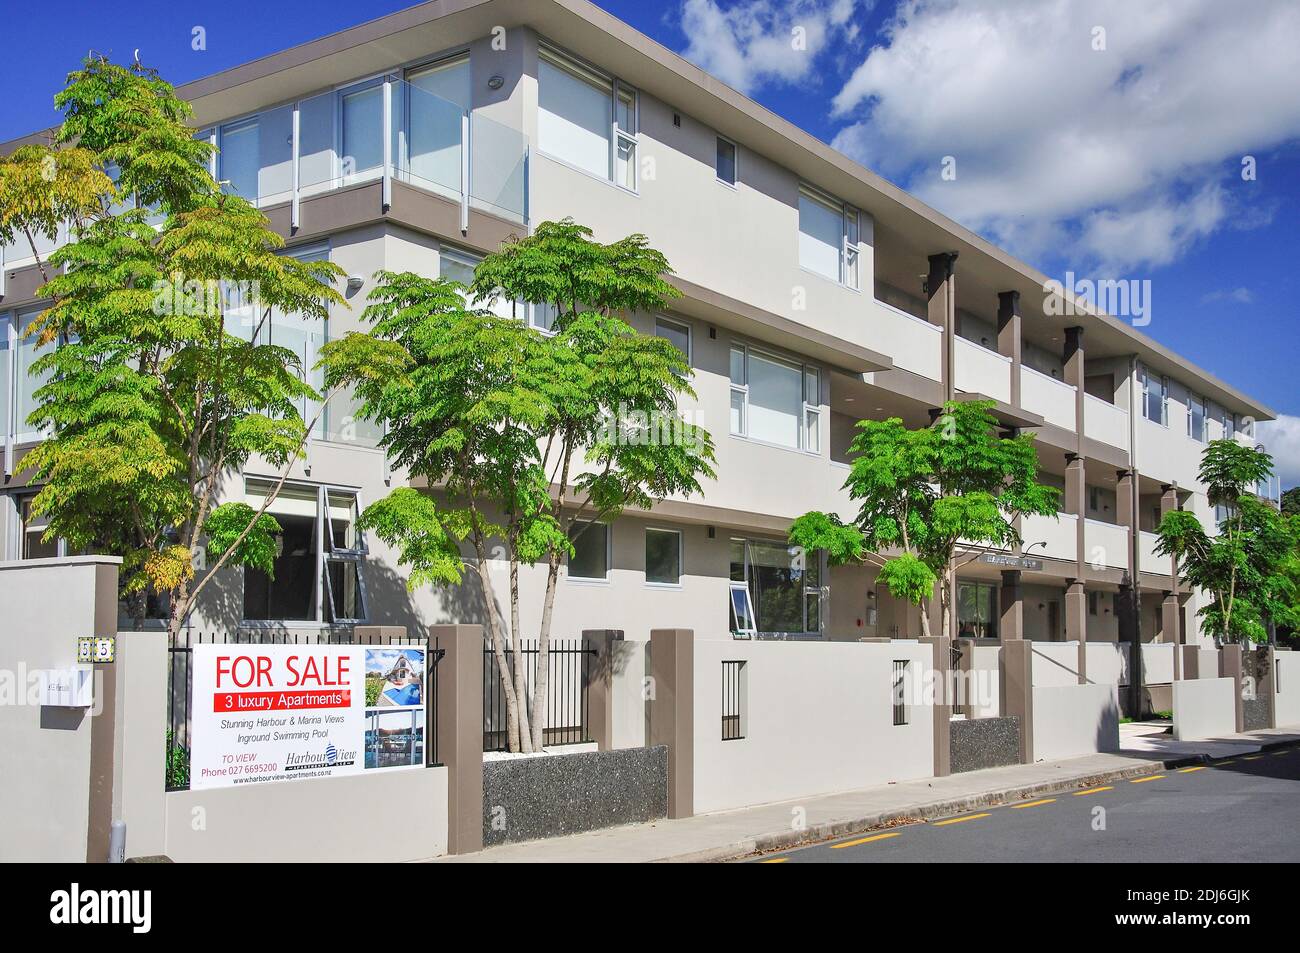 Port de luxe appartements à vendre, Esplanade, Whitianga, Mercury Bay, péninsule de Coromandel, de la région de Waikato, Nouvelle-Zélande Banque D'Images